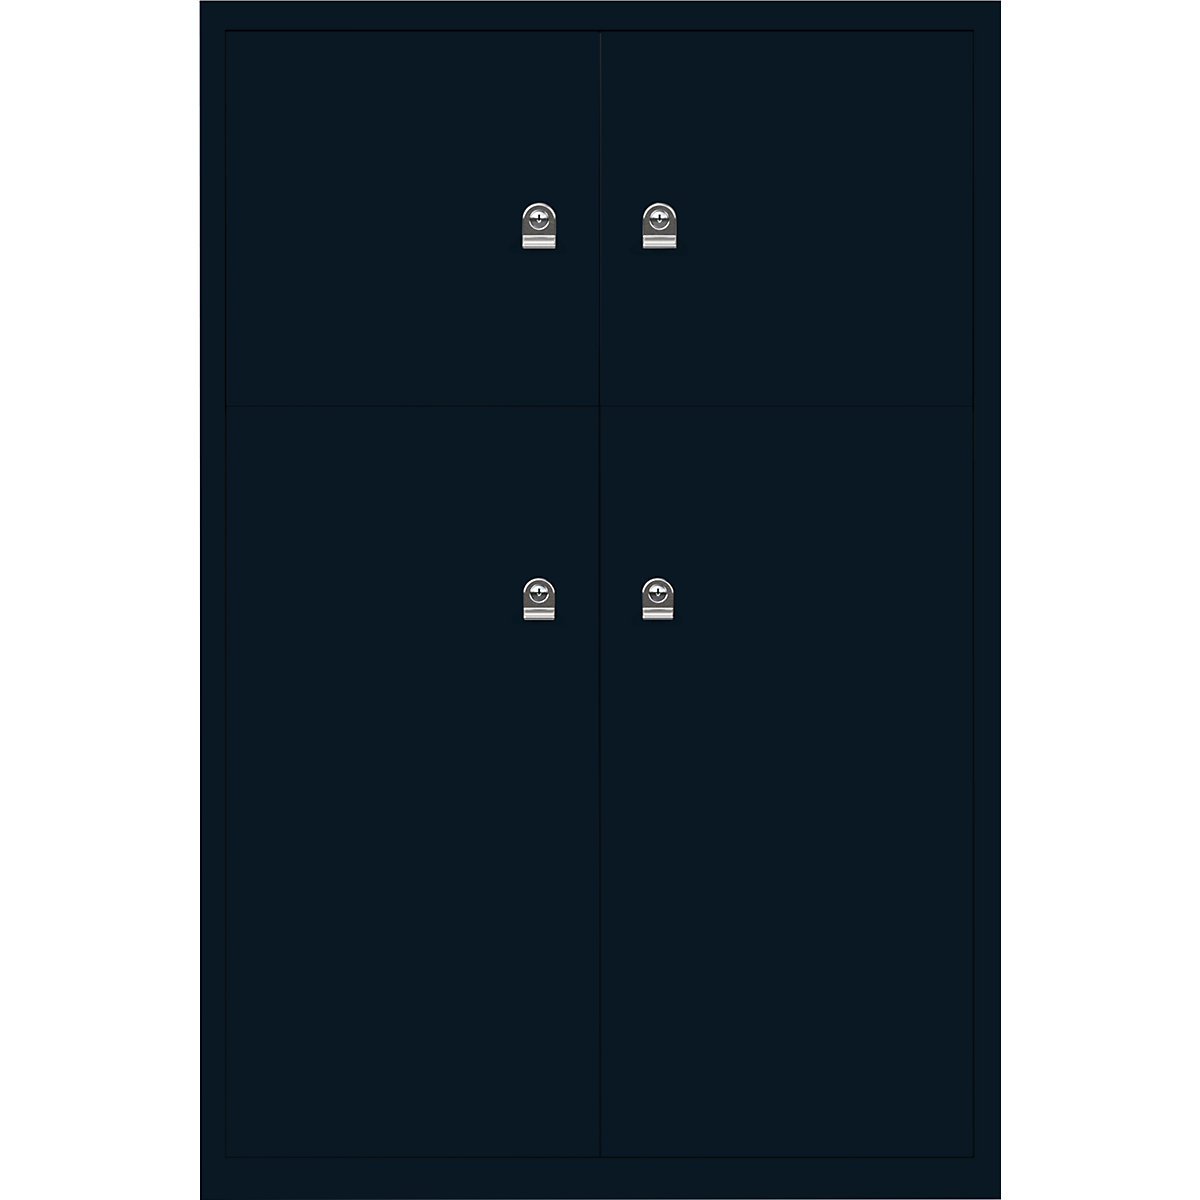 Ormar LateralFile™ Lodge – BISLEY, s 4 pretinca sa zaključavanjem, visina 2 x 375 mm, 2 x 755 mm, u prusko crnoj boji-26